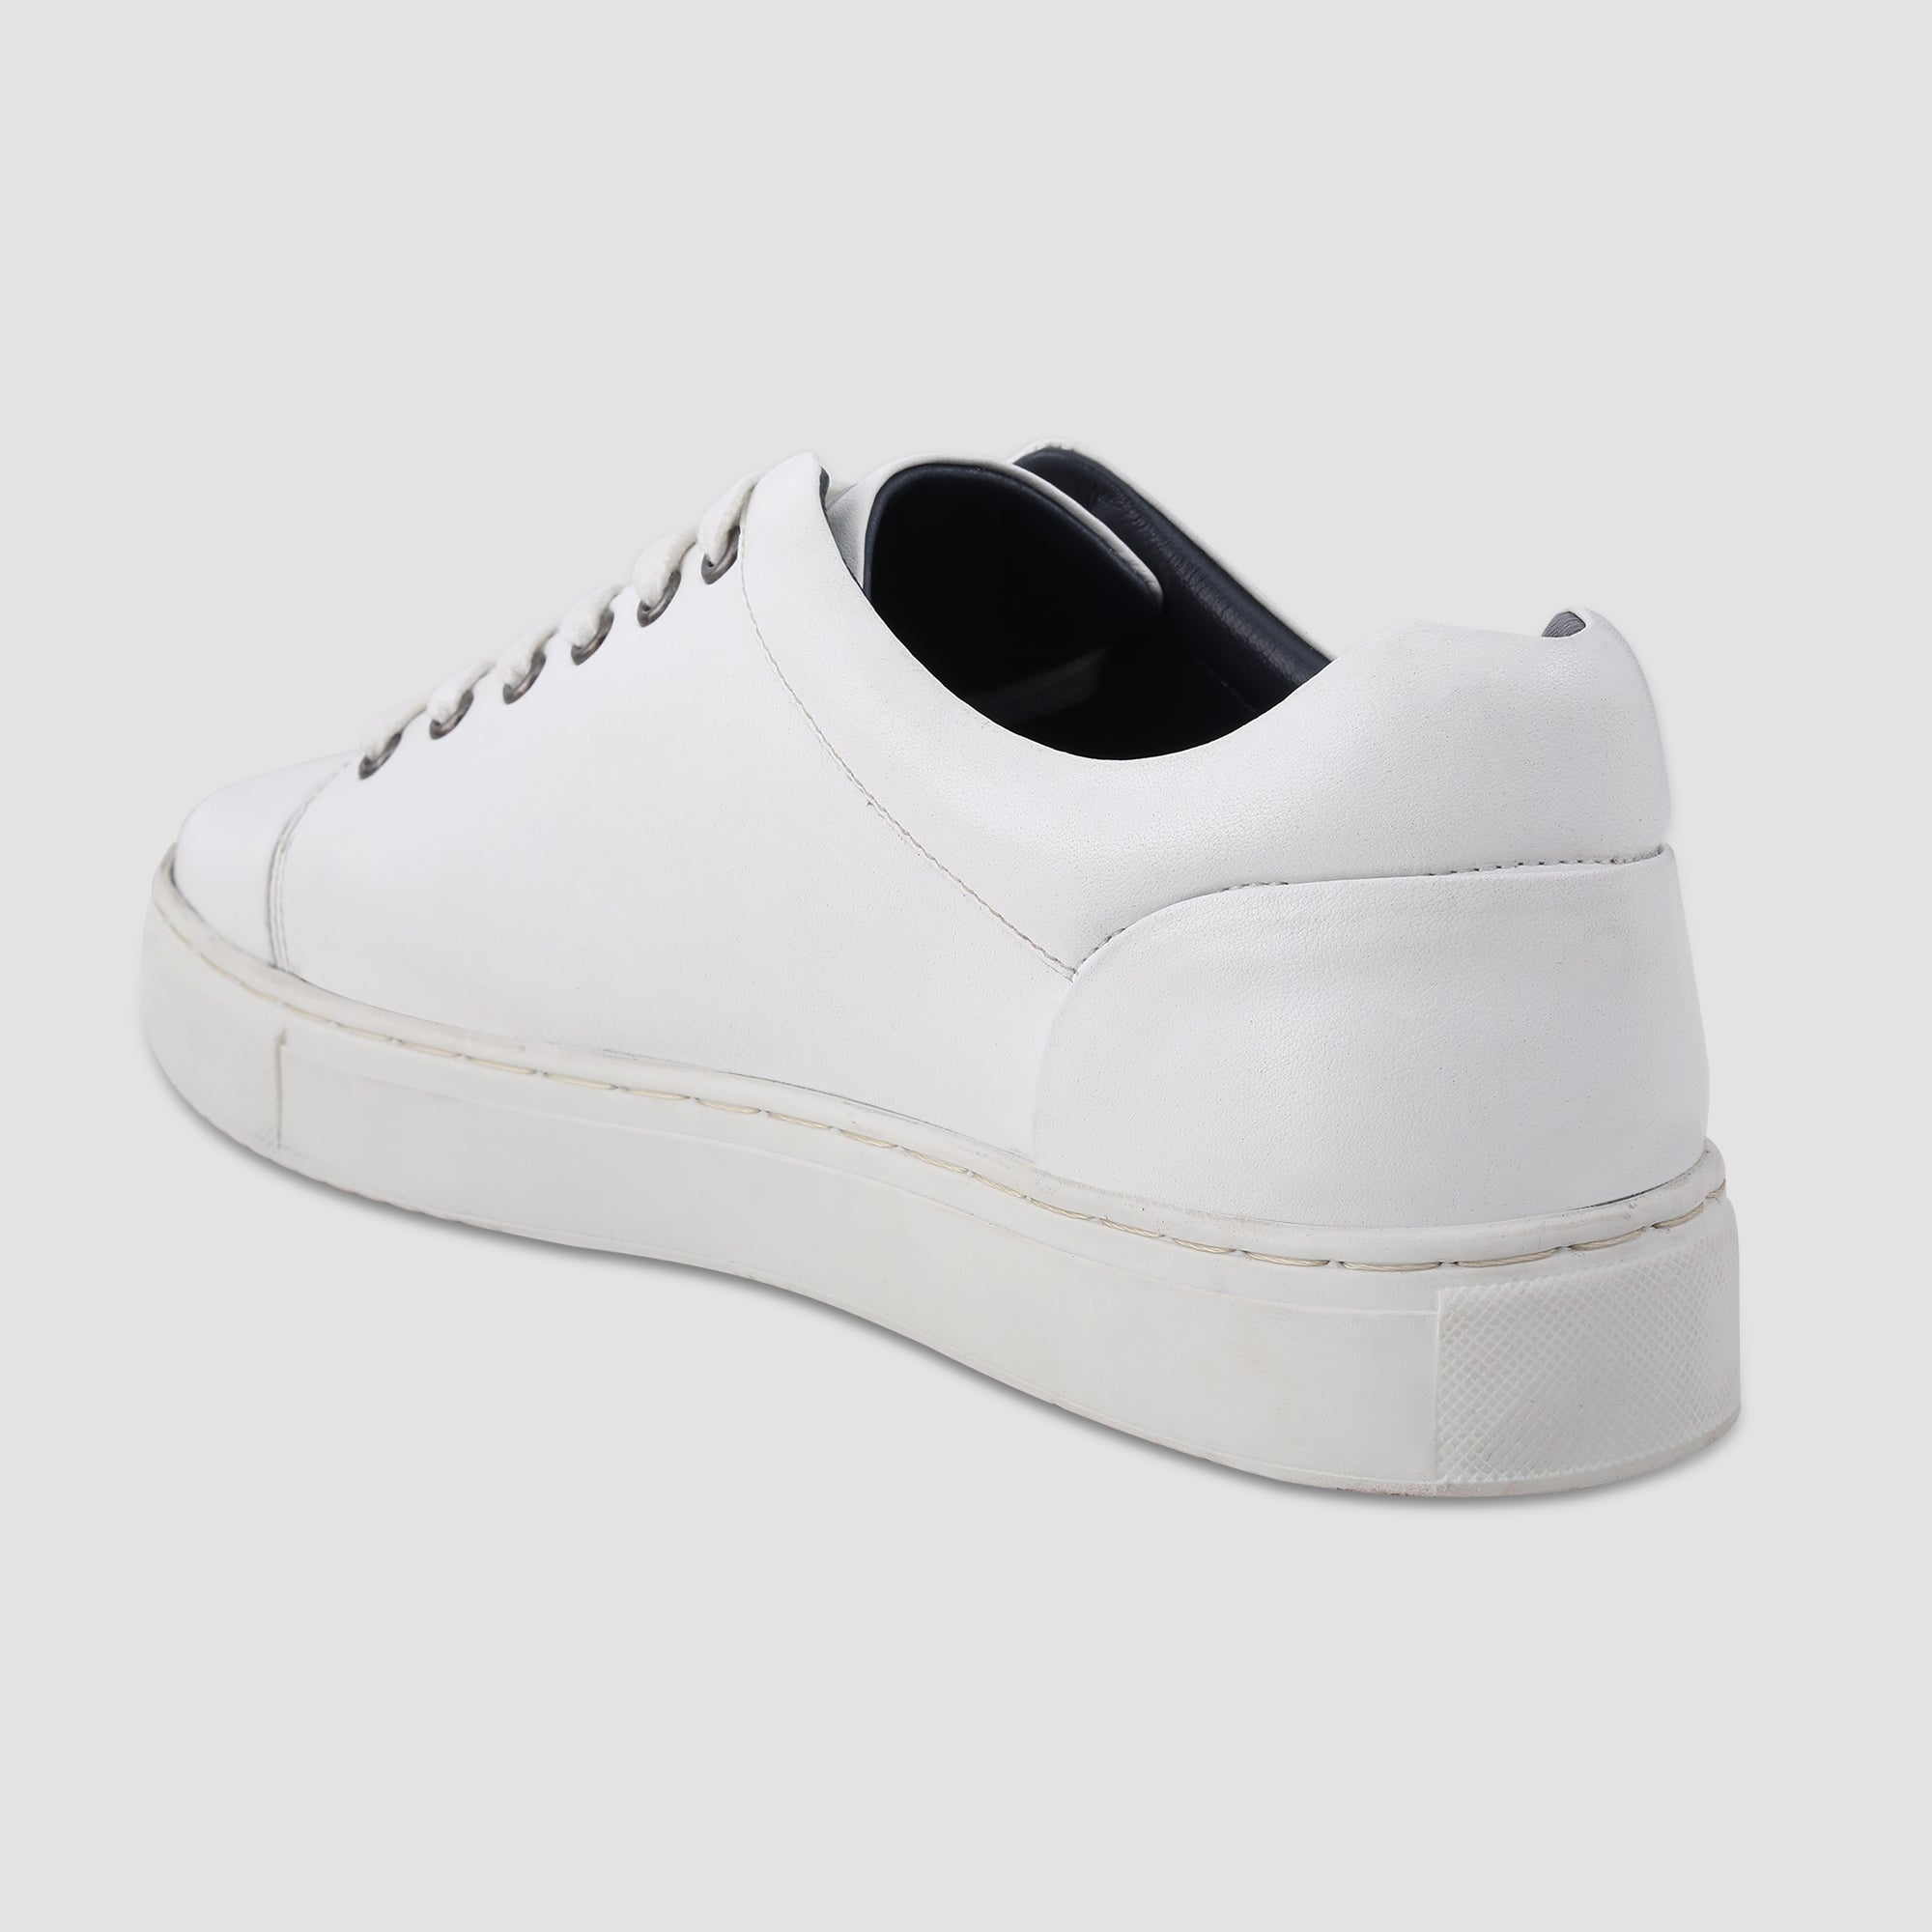 Ezok White Leather Sneaker For Men